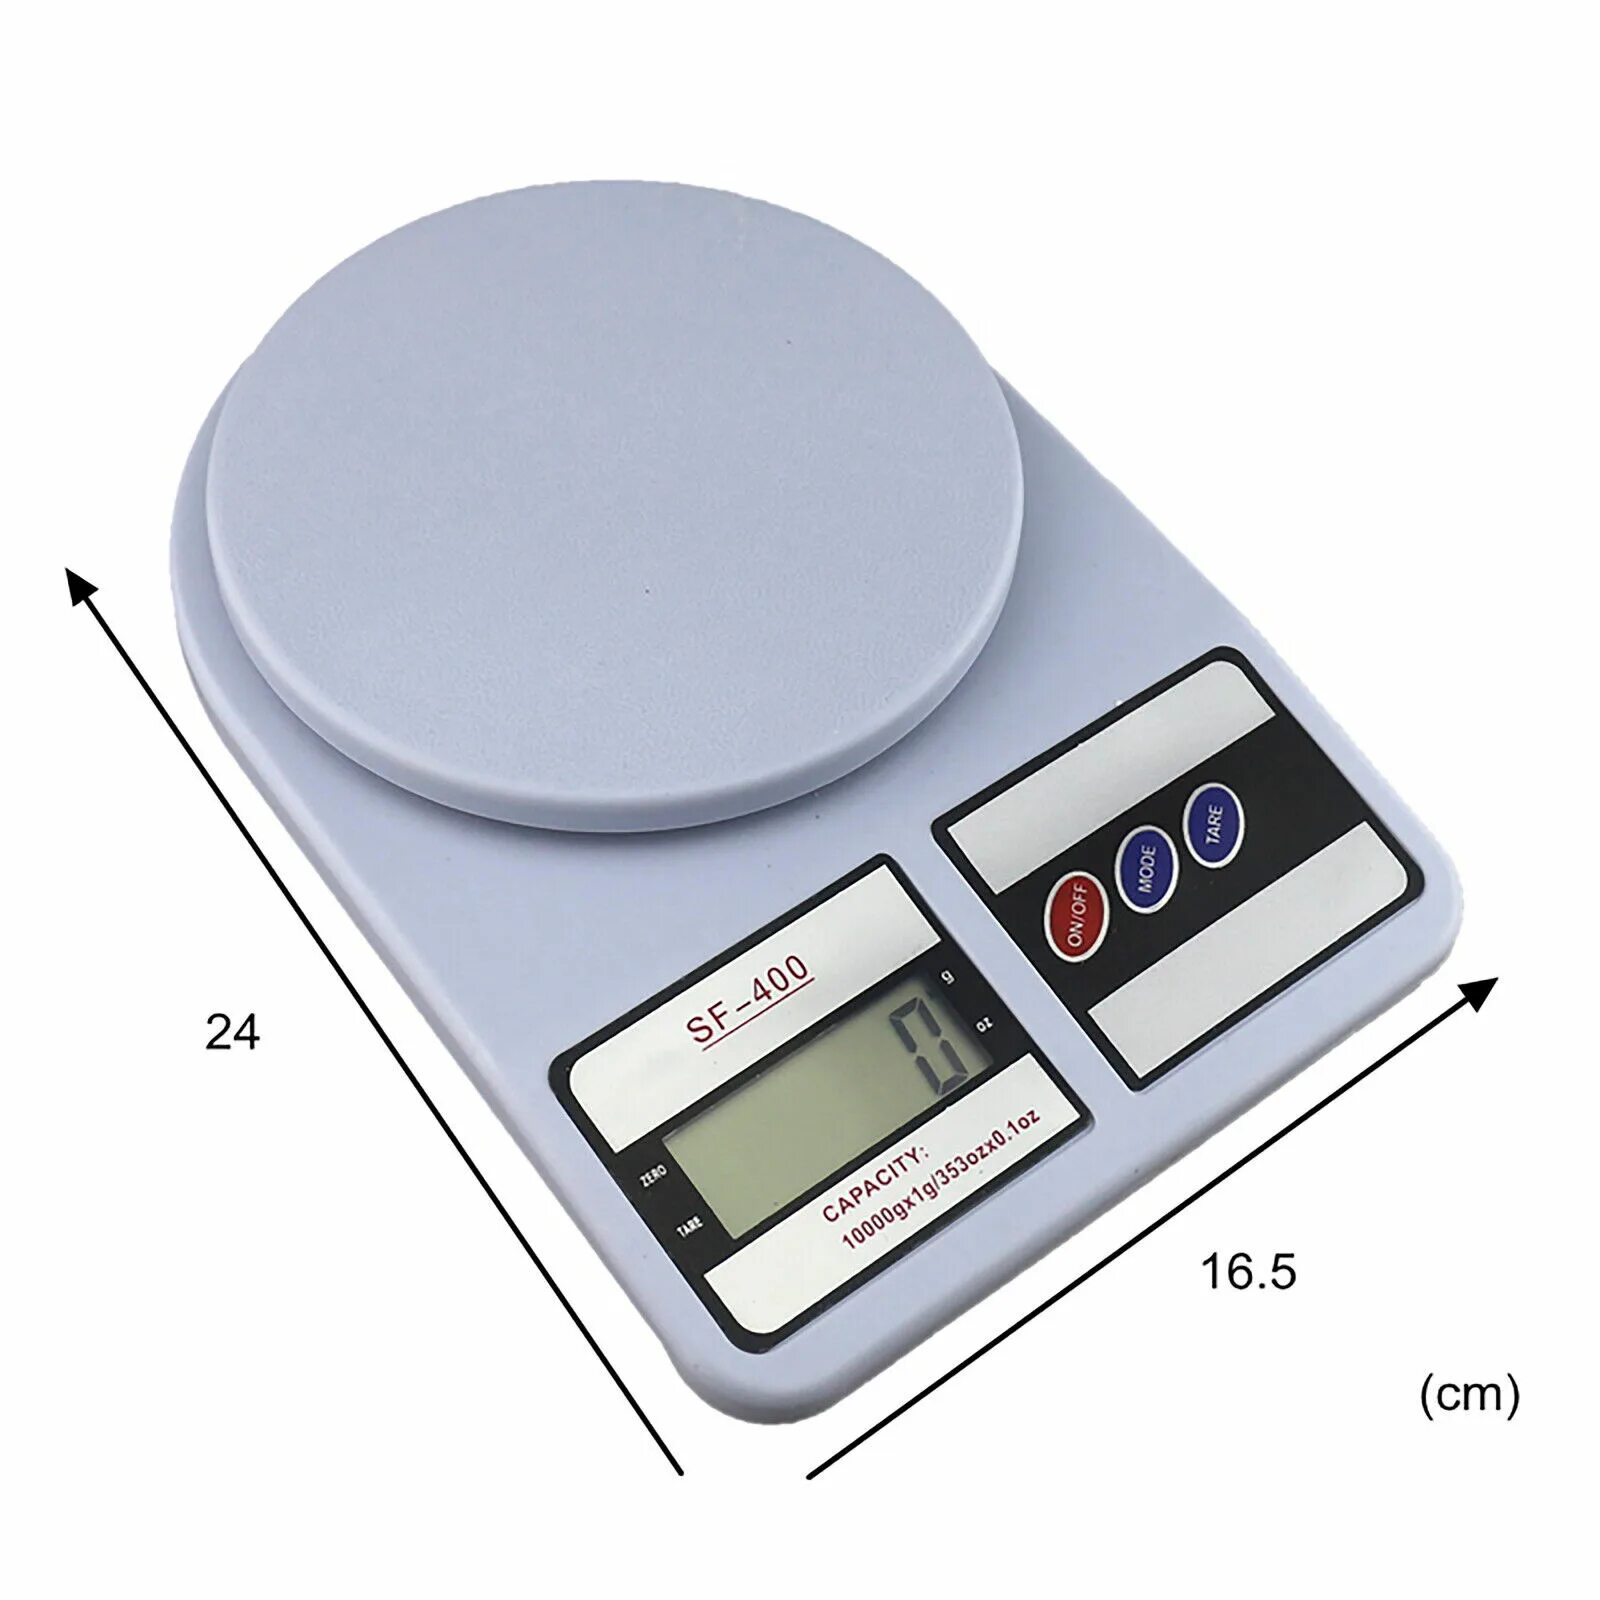 Китайские весы. Весы электронные 10кг (Китай). Электронные весы для кухни Portable Electronic Scale. Электронные весы Edi-312f. Весы измерительные модели nv222,.